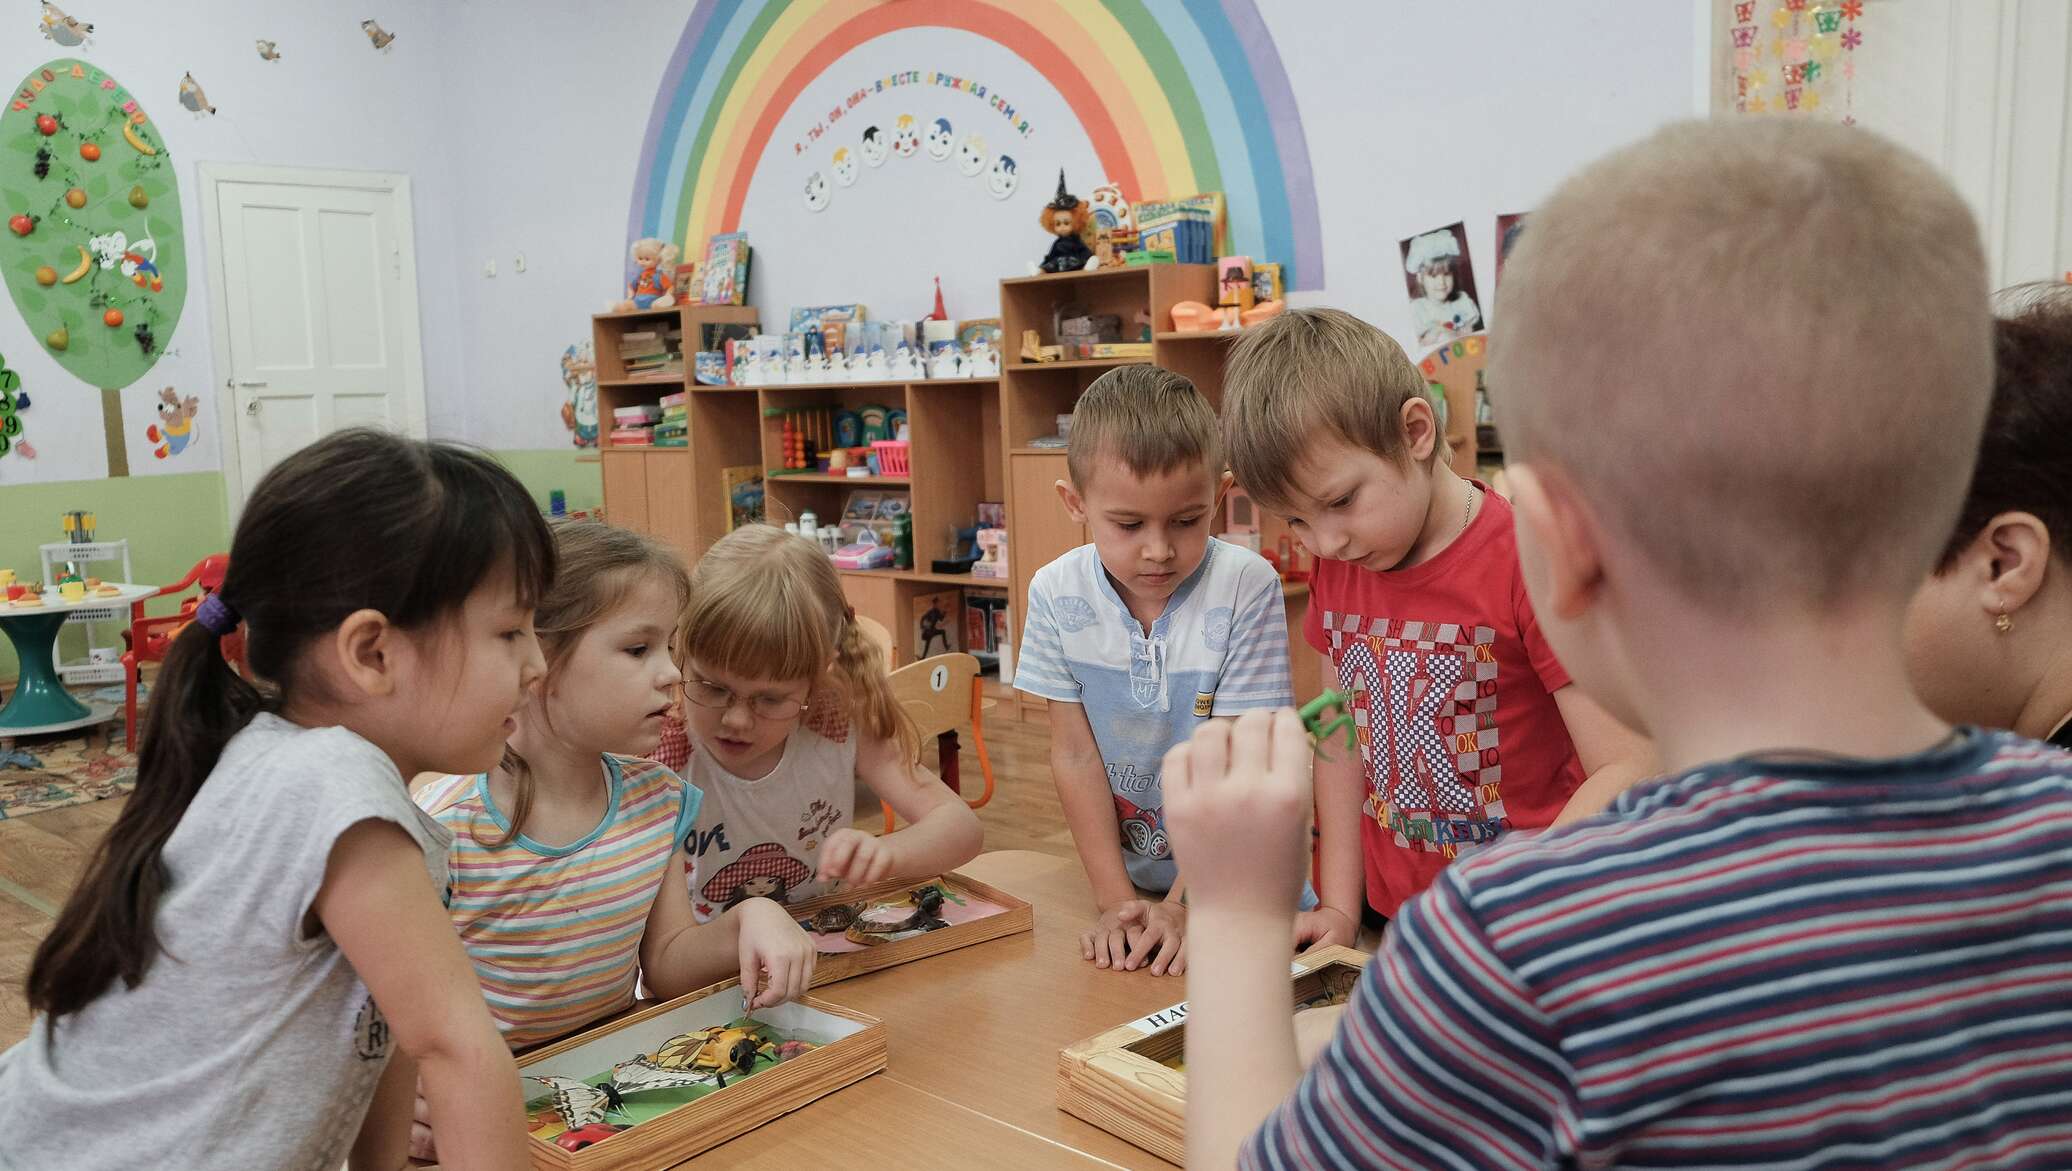 Нужно место в детском саду. Дети в детском саду. Детские сады в России. Фото детей в детском саду. Государственный детский сад.